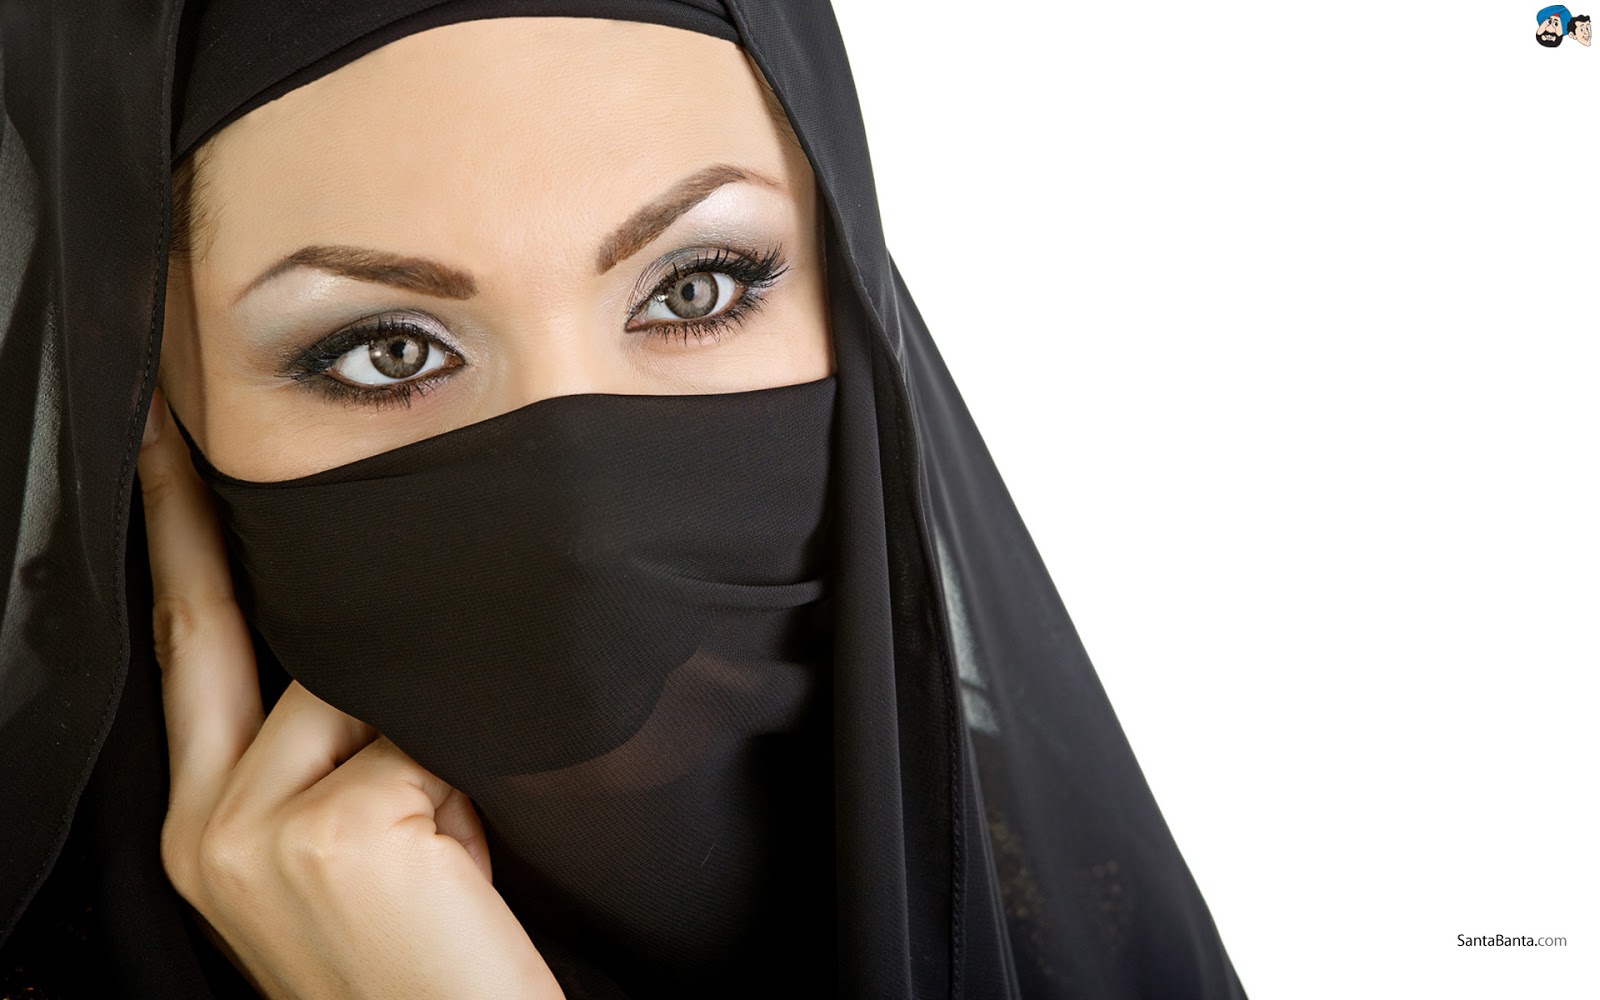 Arab Hijab Images  FemaleCelebrity